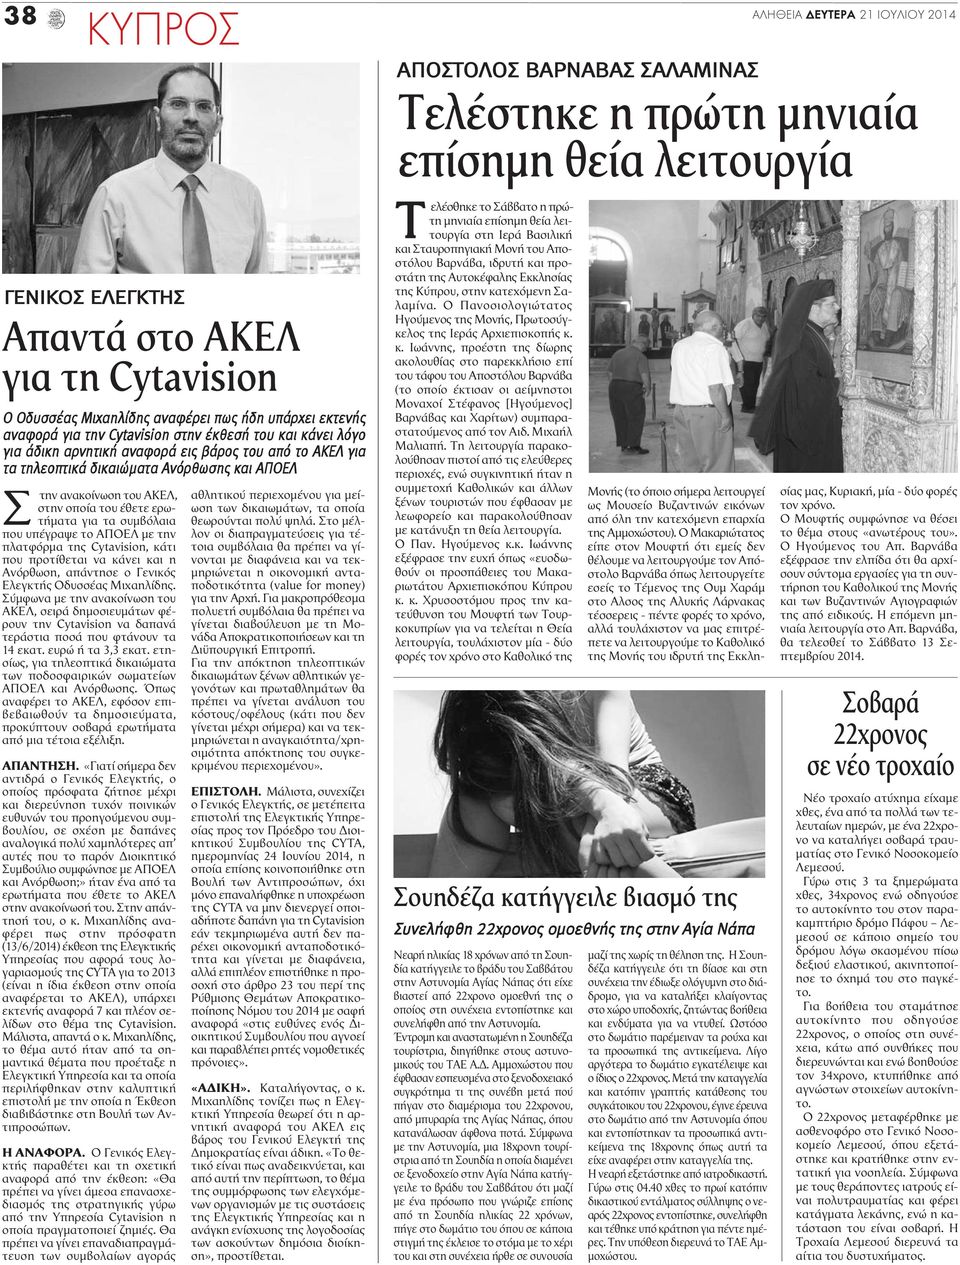 υπέγραψε το ΑΠΟΕΛ με την πλατφόρμα της Cytavision, κάτι που προτίθεται να κάνει και η Ανόρθωση, απάντησε ο Γενικός Ελεγκτής Οδυσσέας Μιχαηλίδης.